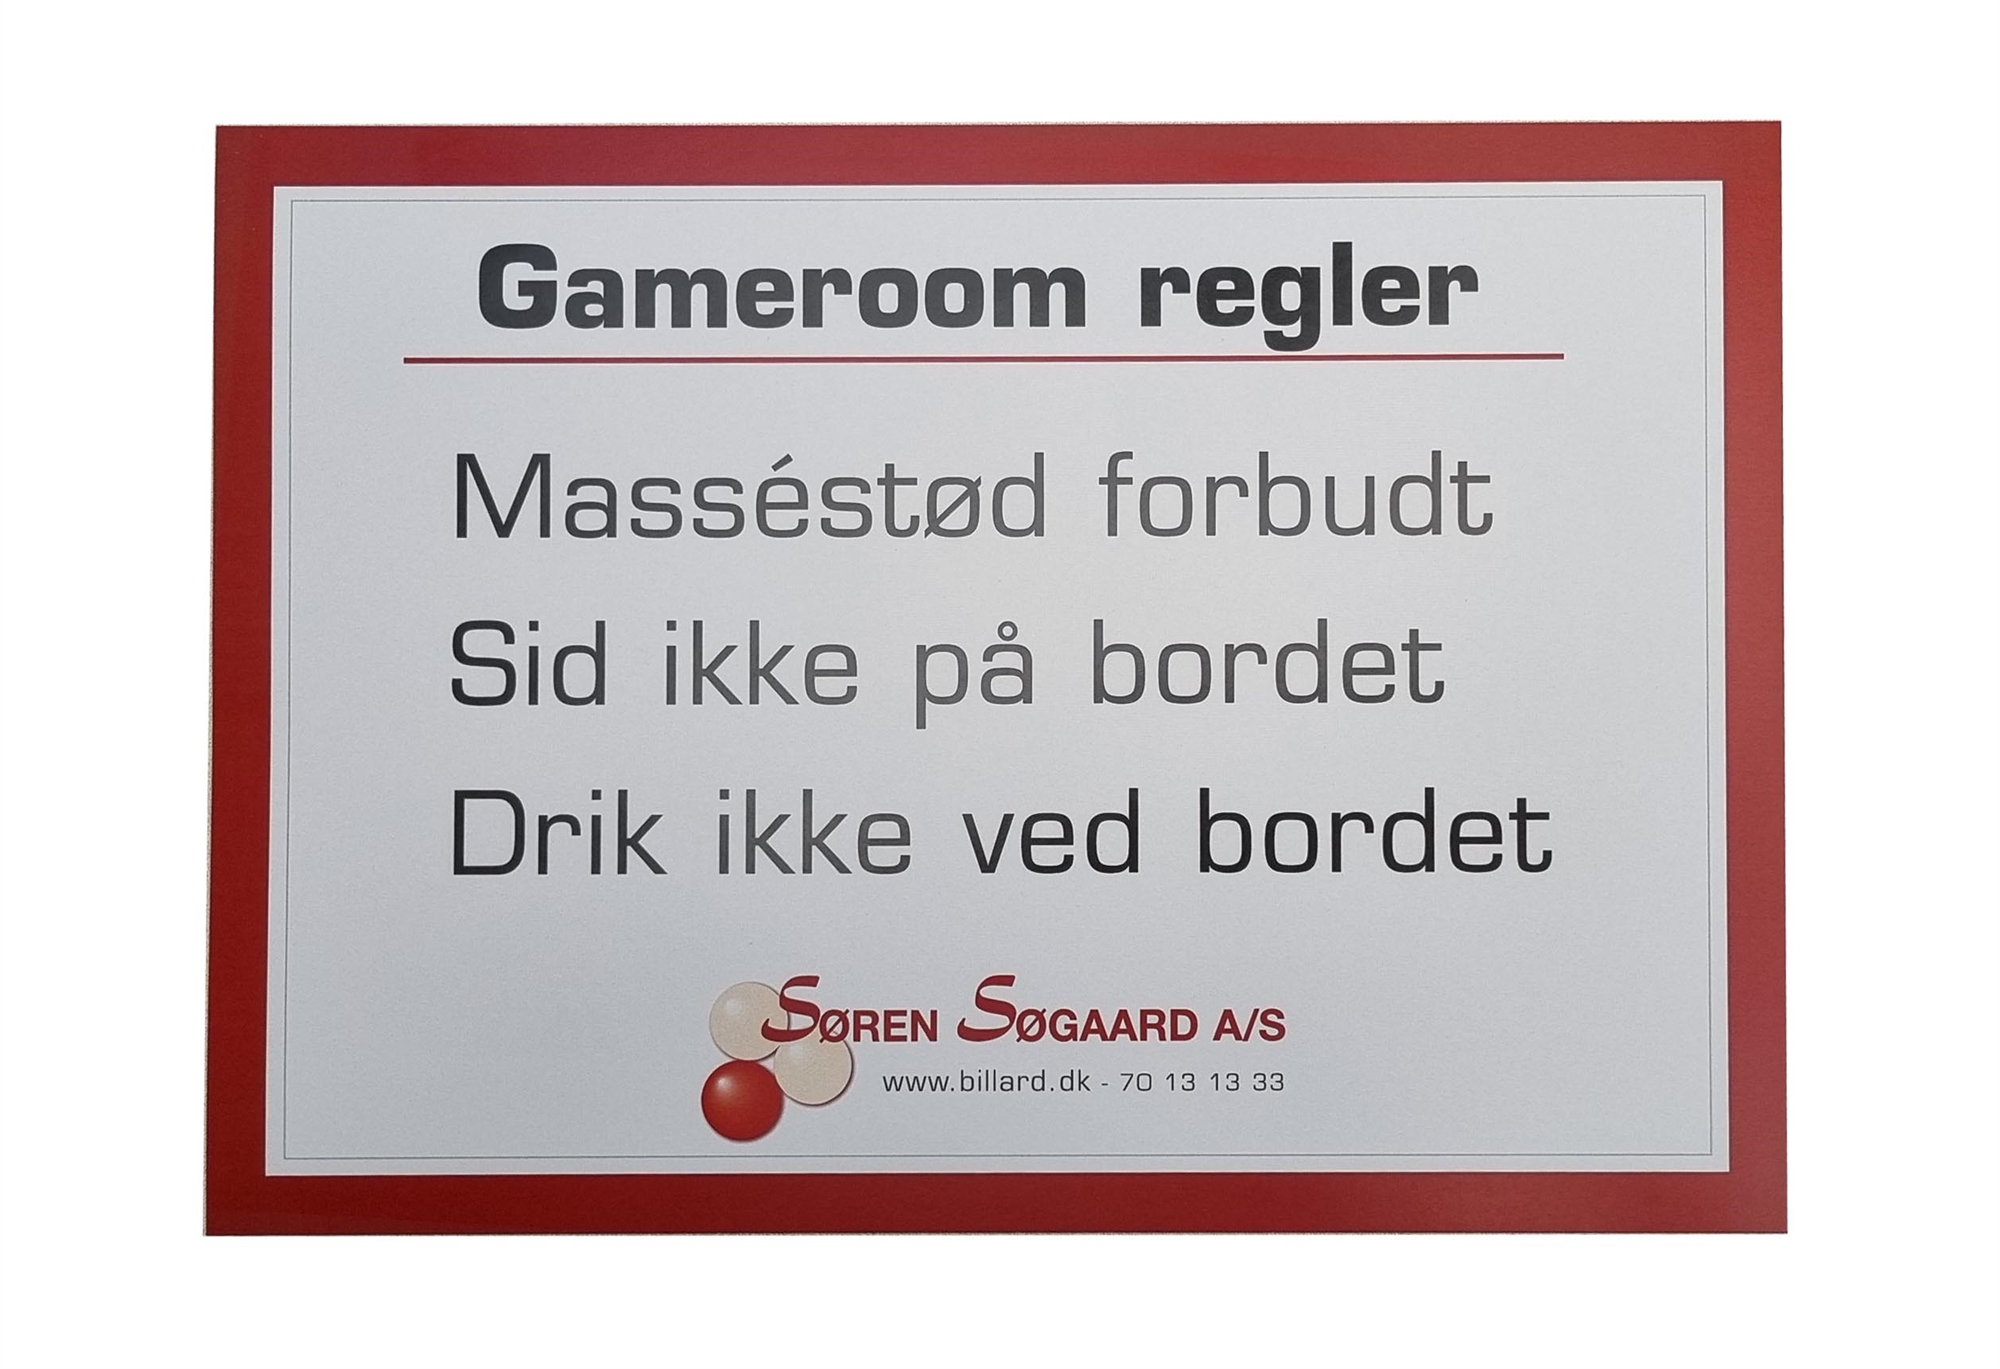 Gameroom regler